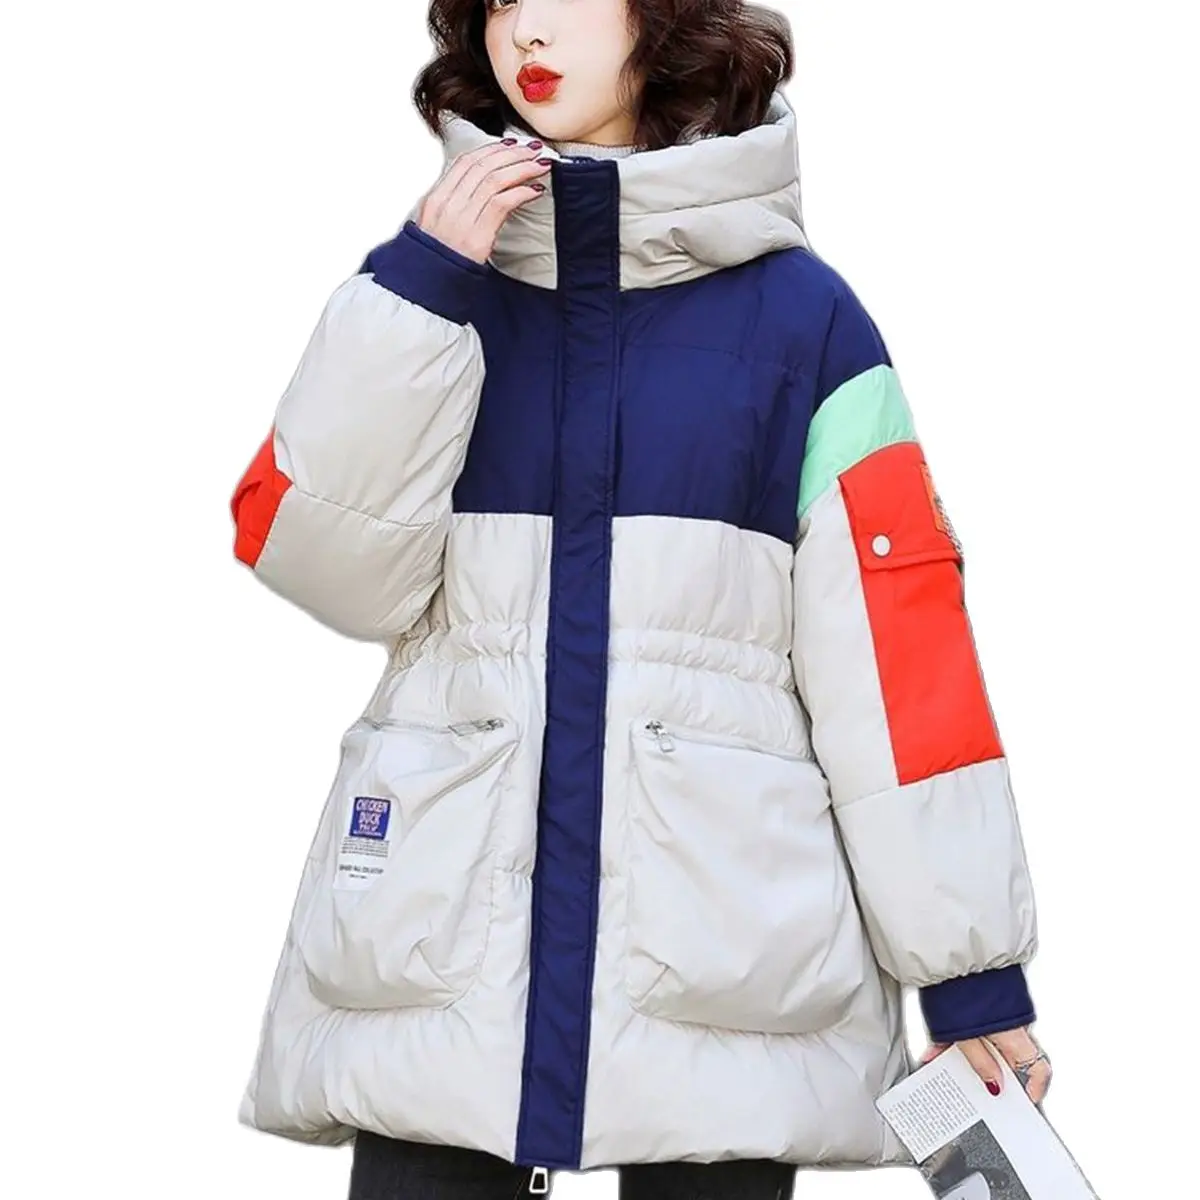 White duck down jacket women's winter short warm jacket bright down jacket waist thicker to overcome college wear